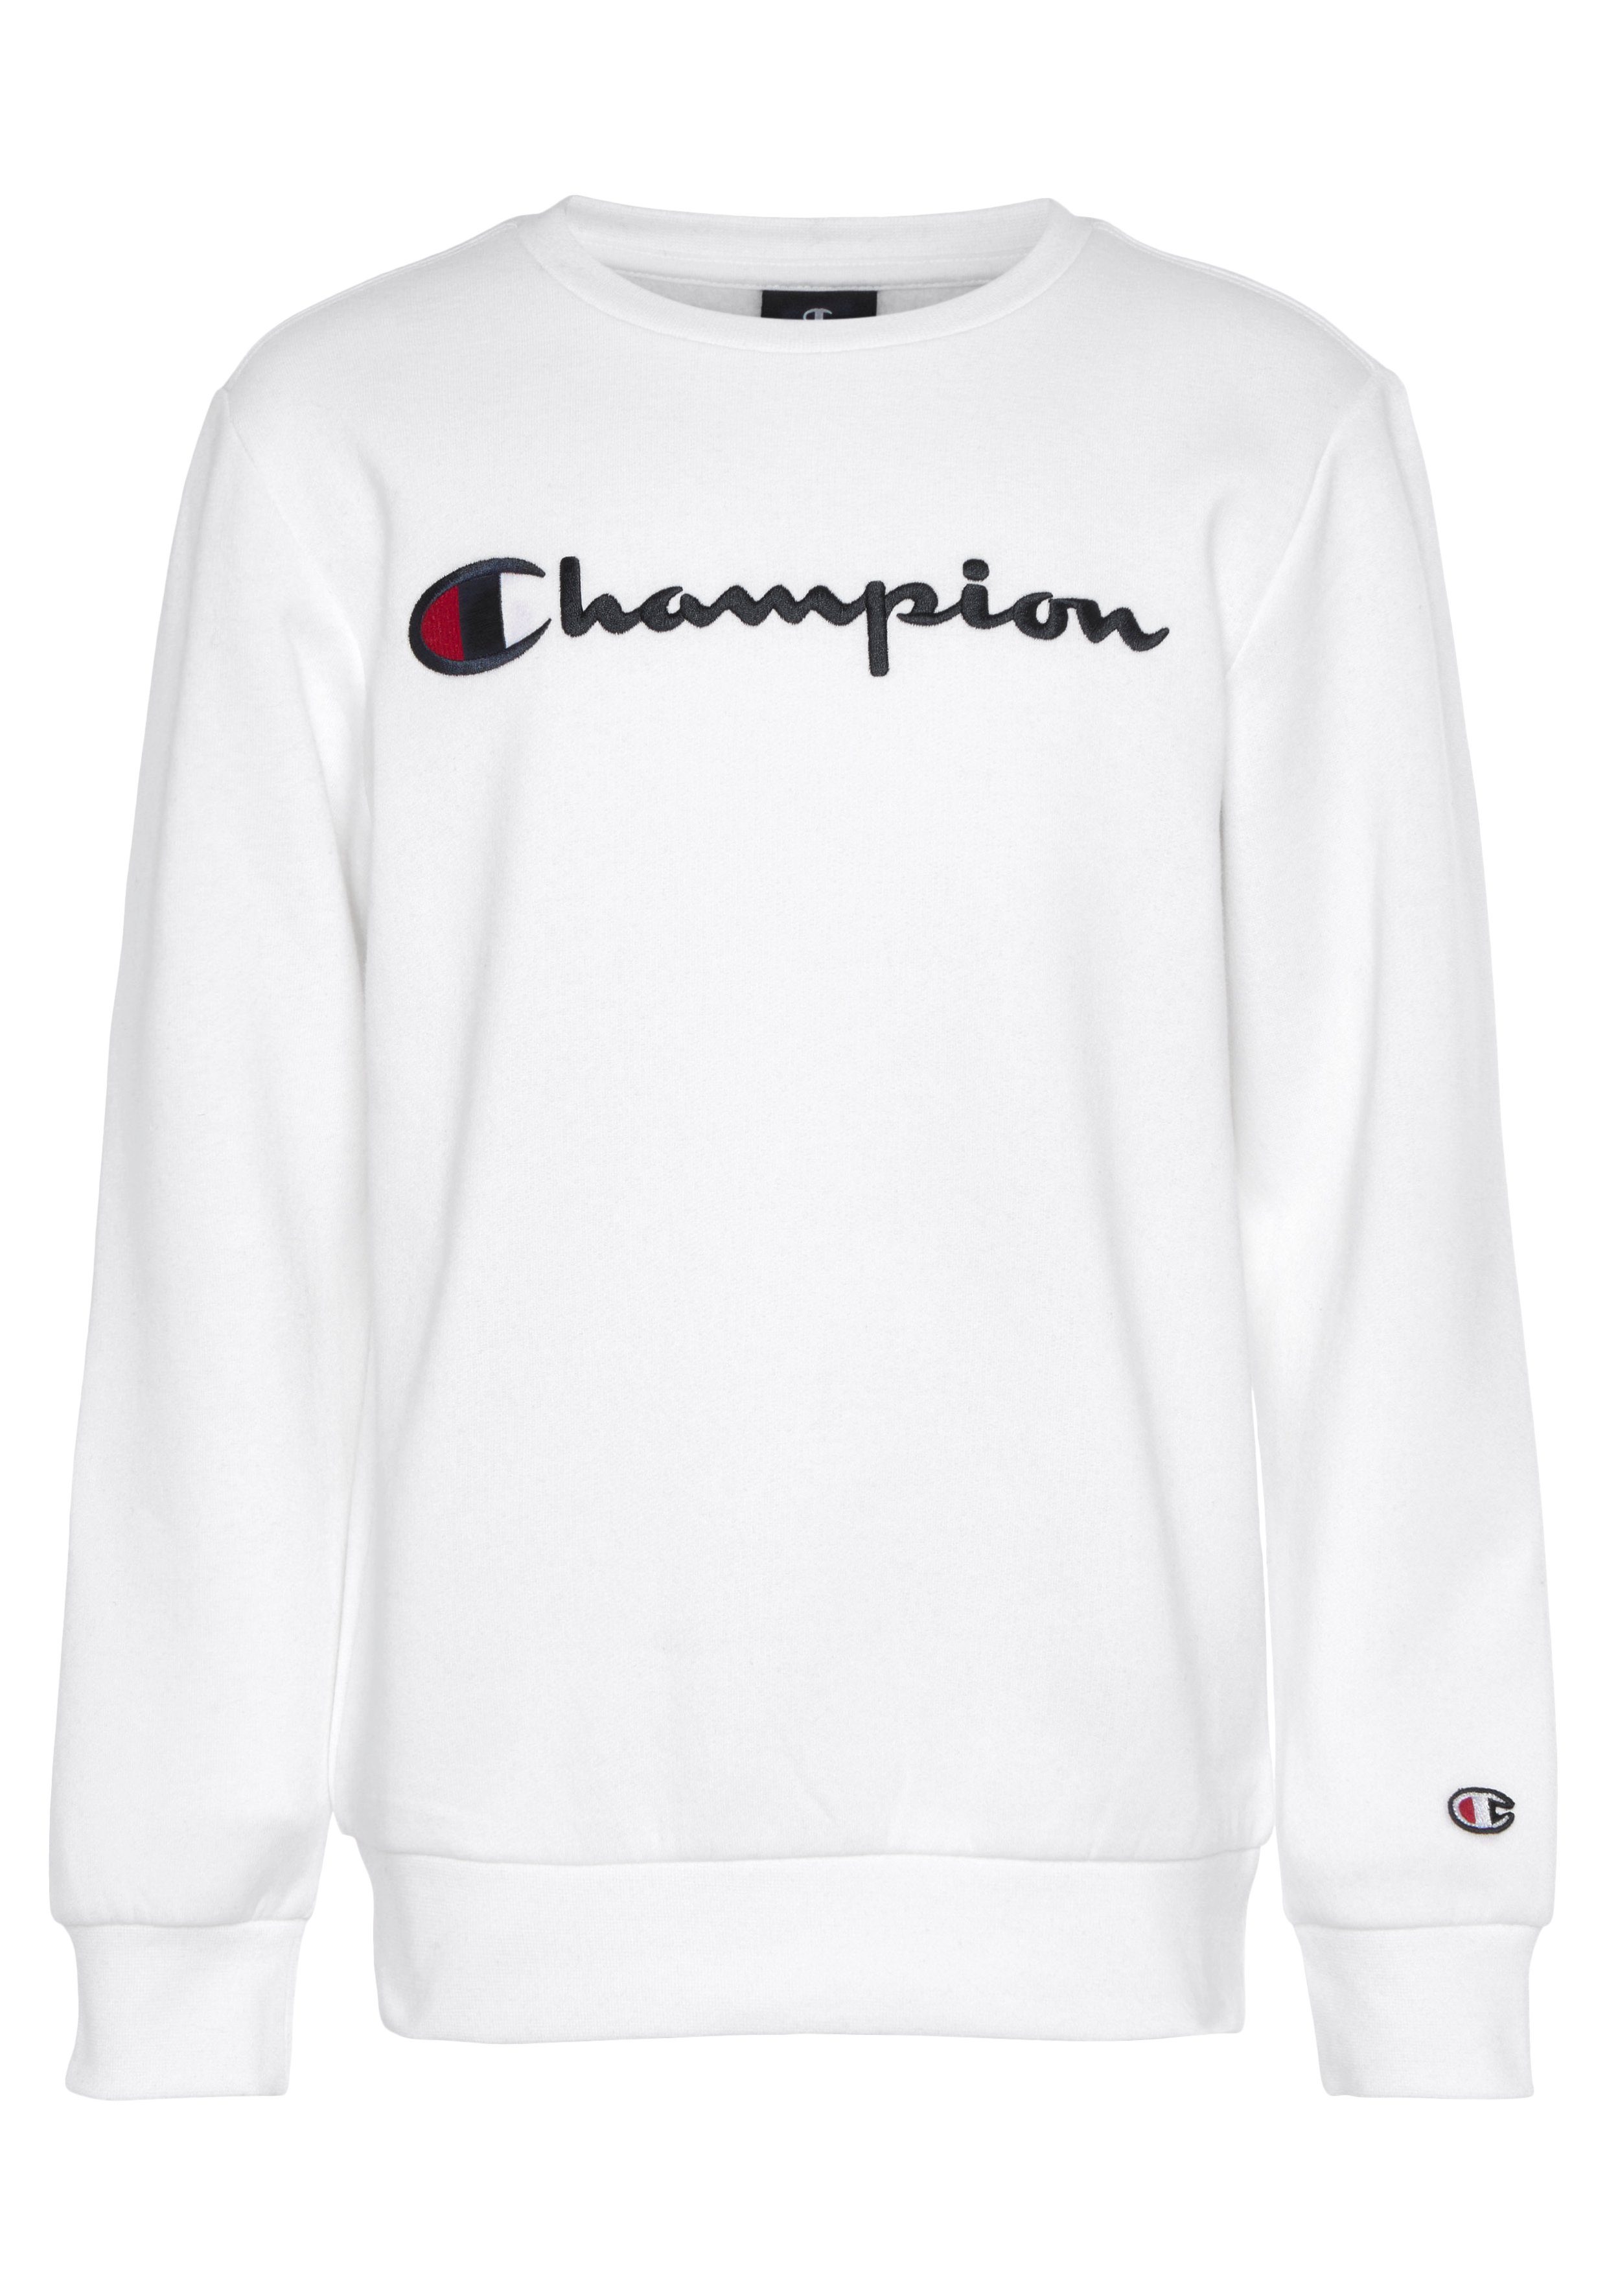 Champion Sweatshirt Classic Crewneck Sweatshirt large Logo - für Kinder weiß